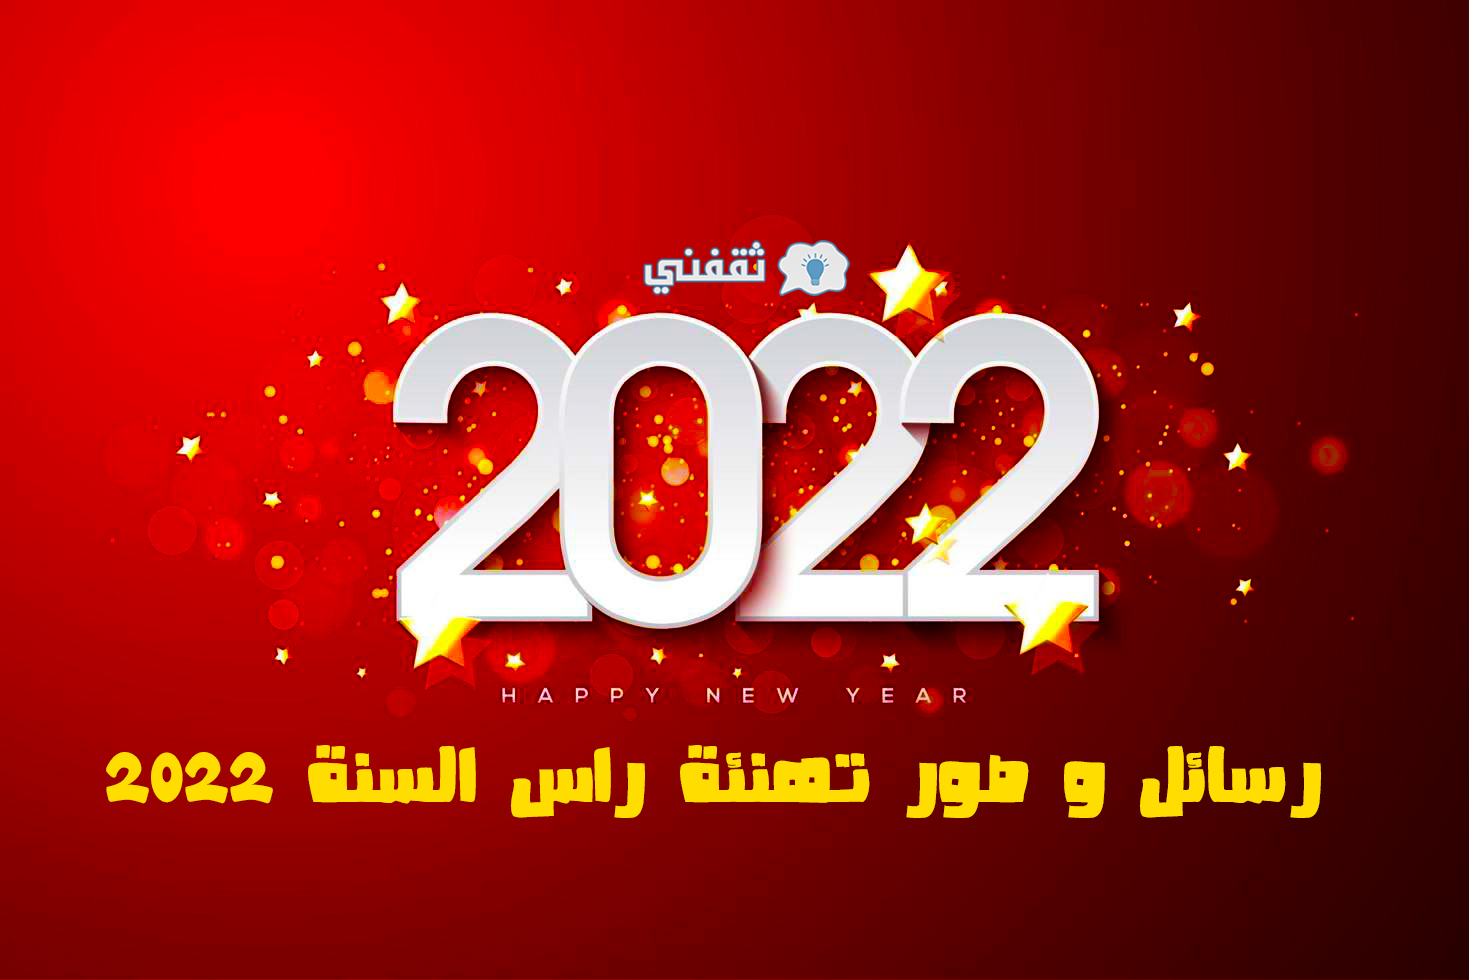 رسائل و صور تهنئة راس السنة 2022.. إليك أحدث رسائل تهاني العام الجديد للحبيب